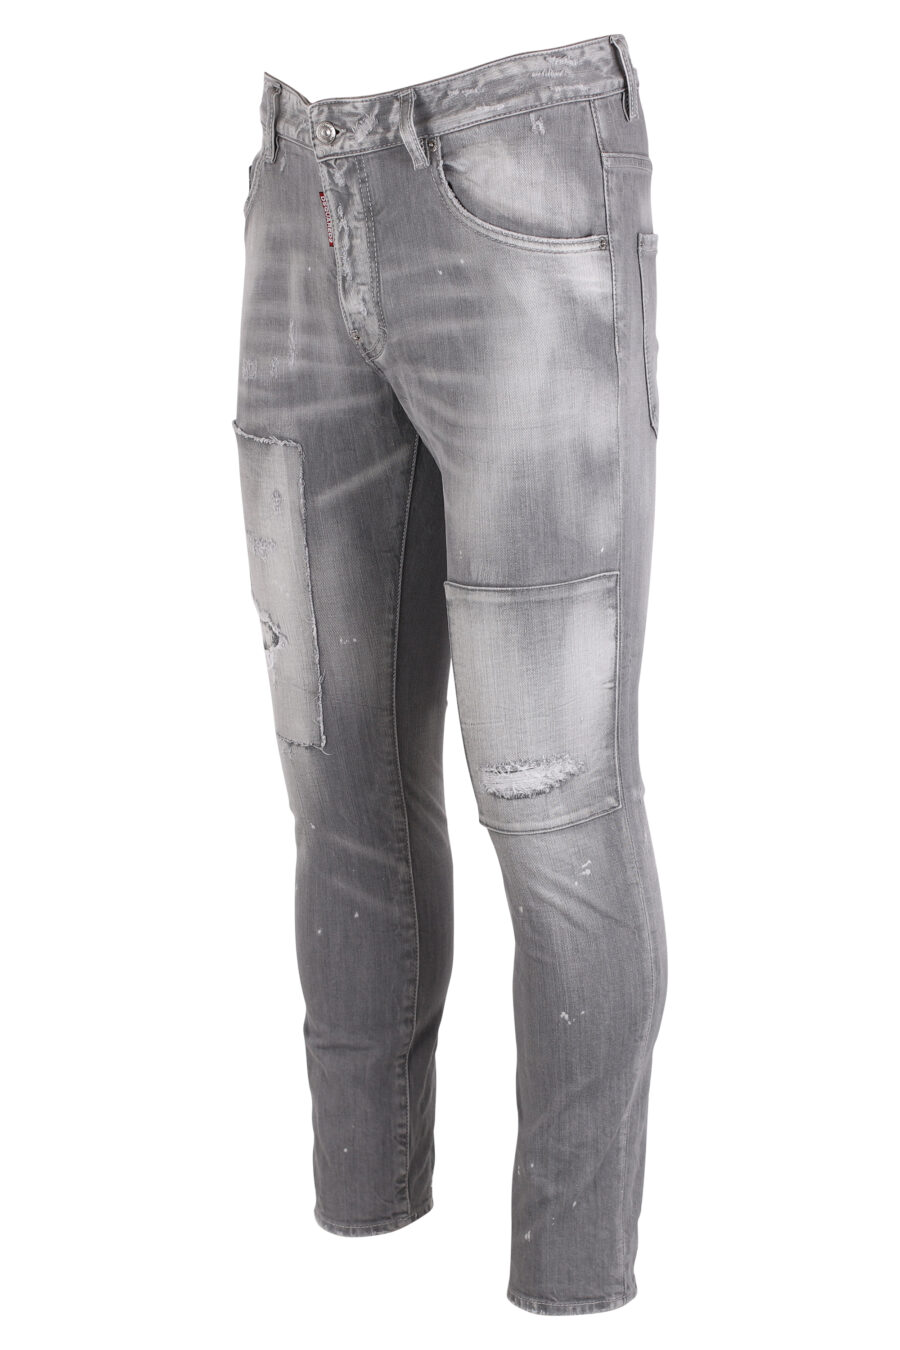 Pantalón vaquero "skater" gris efecto desgastado - IMG 4120